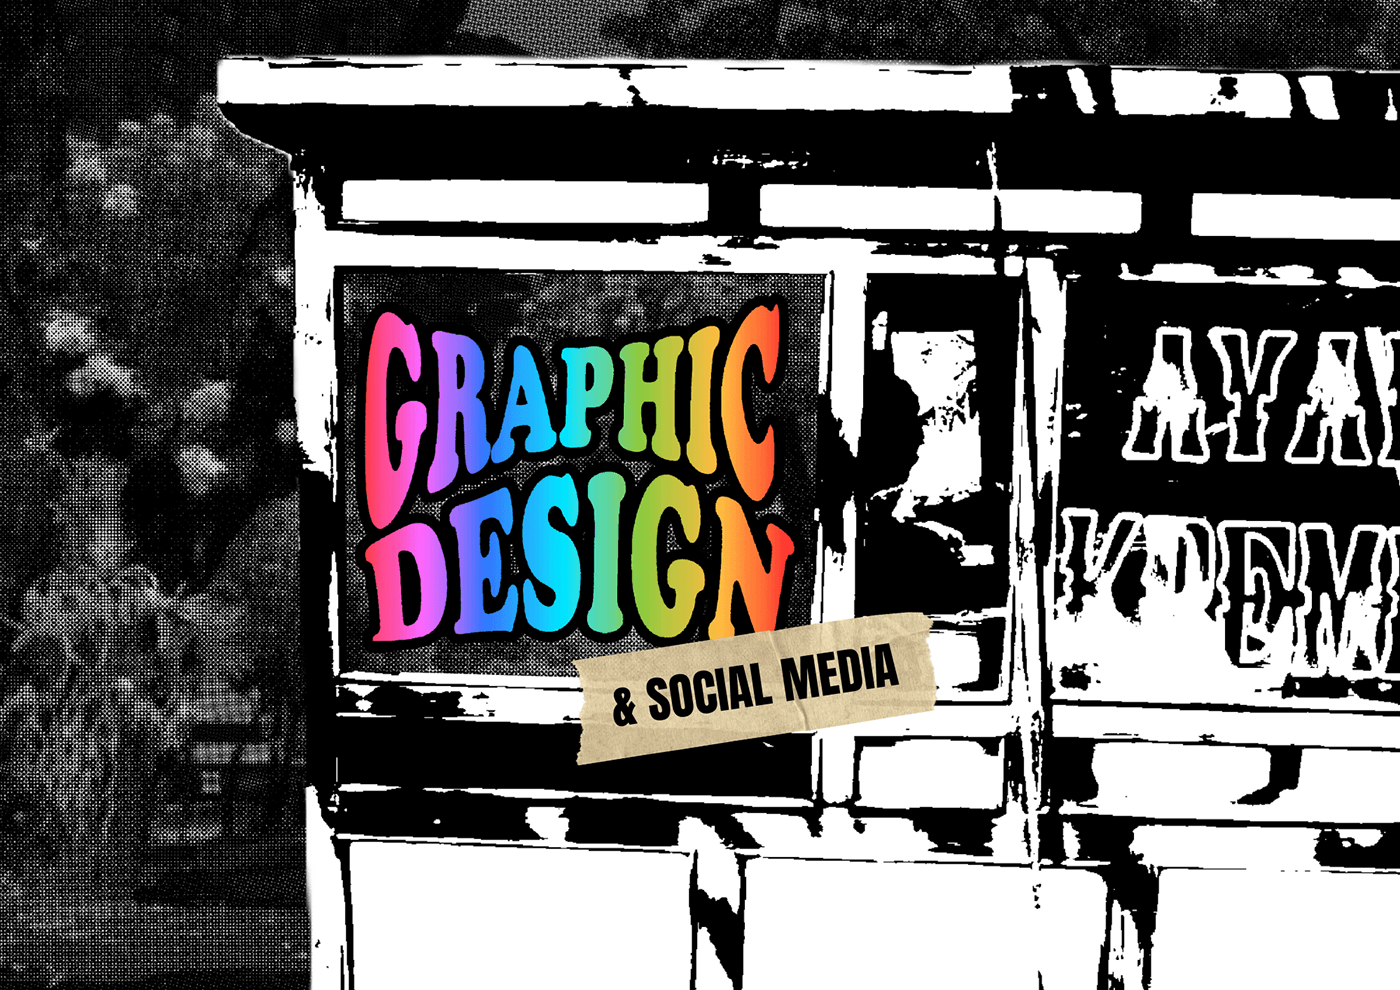 portofolio Graphic Designer portofolio design  Photography  ILLUSTRATION  Digital Art  artwork